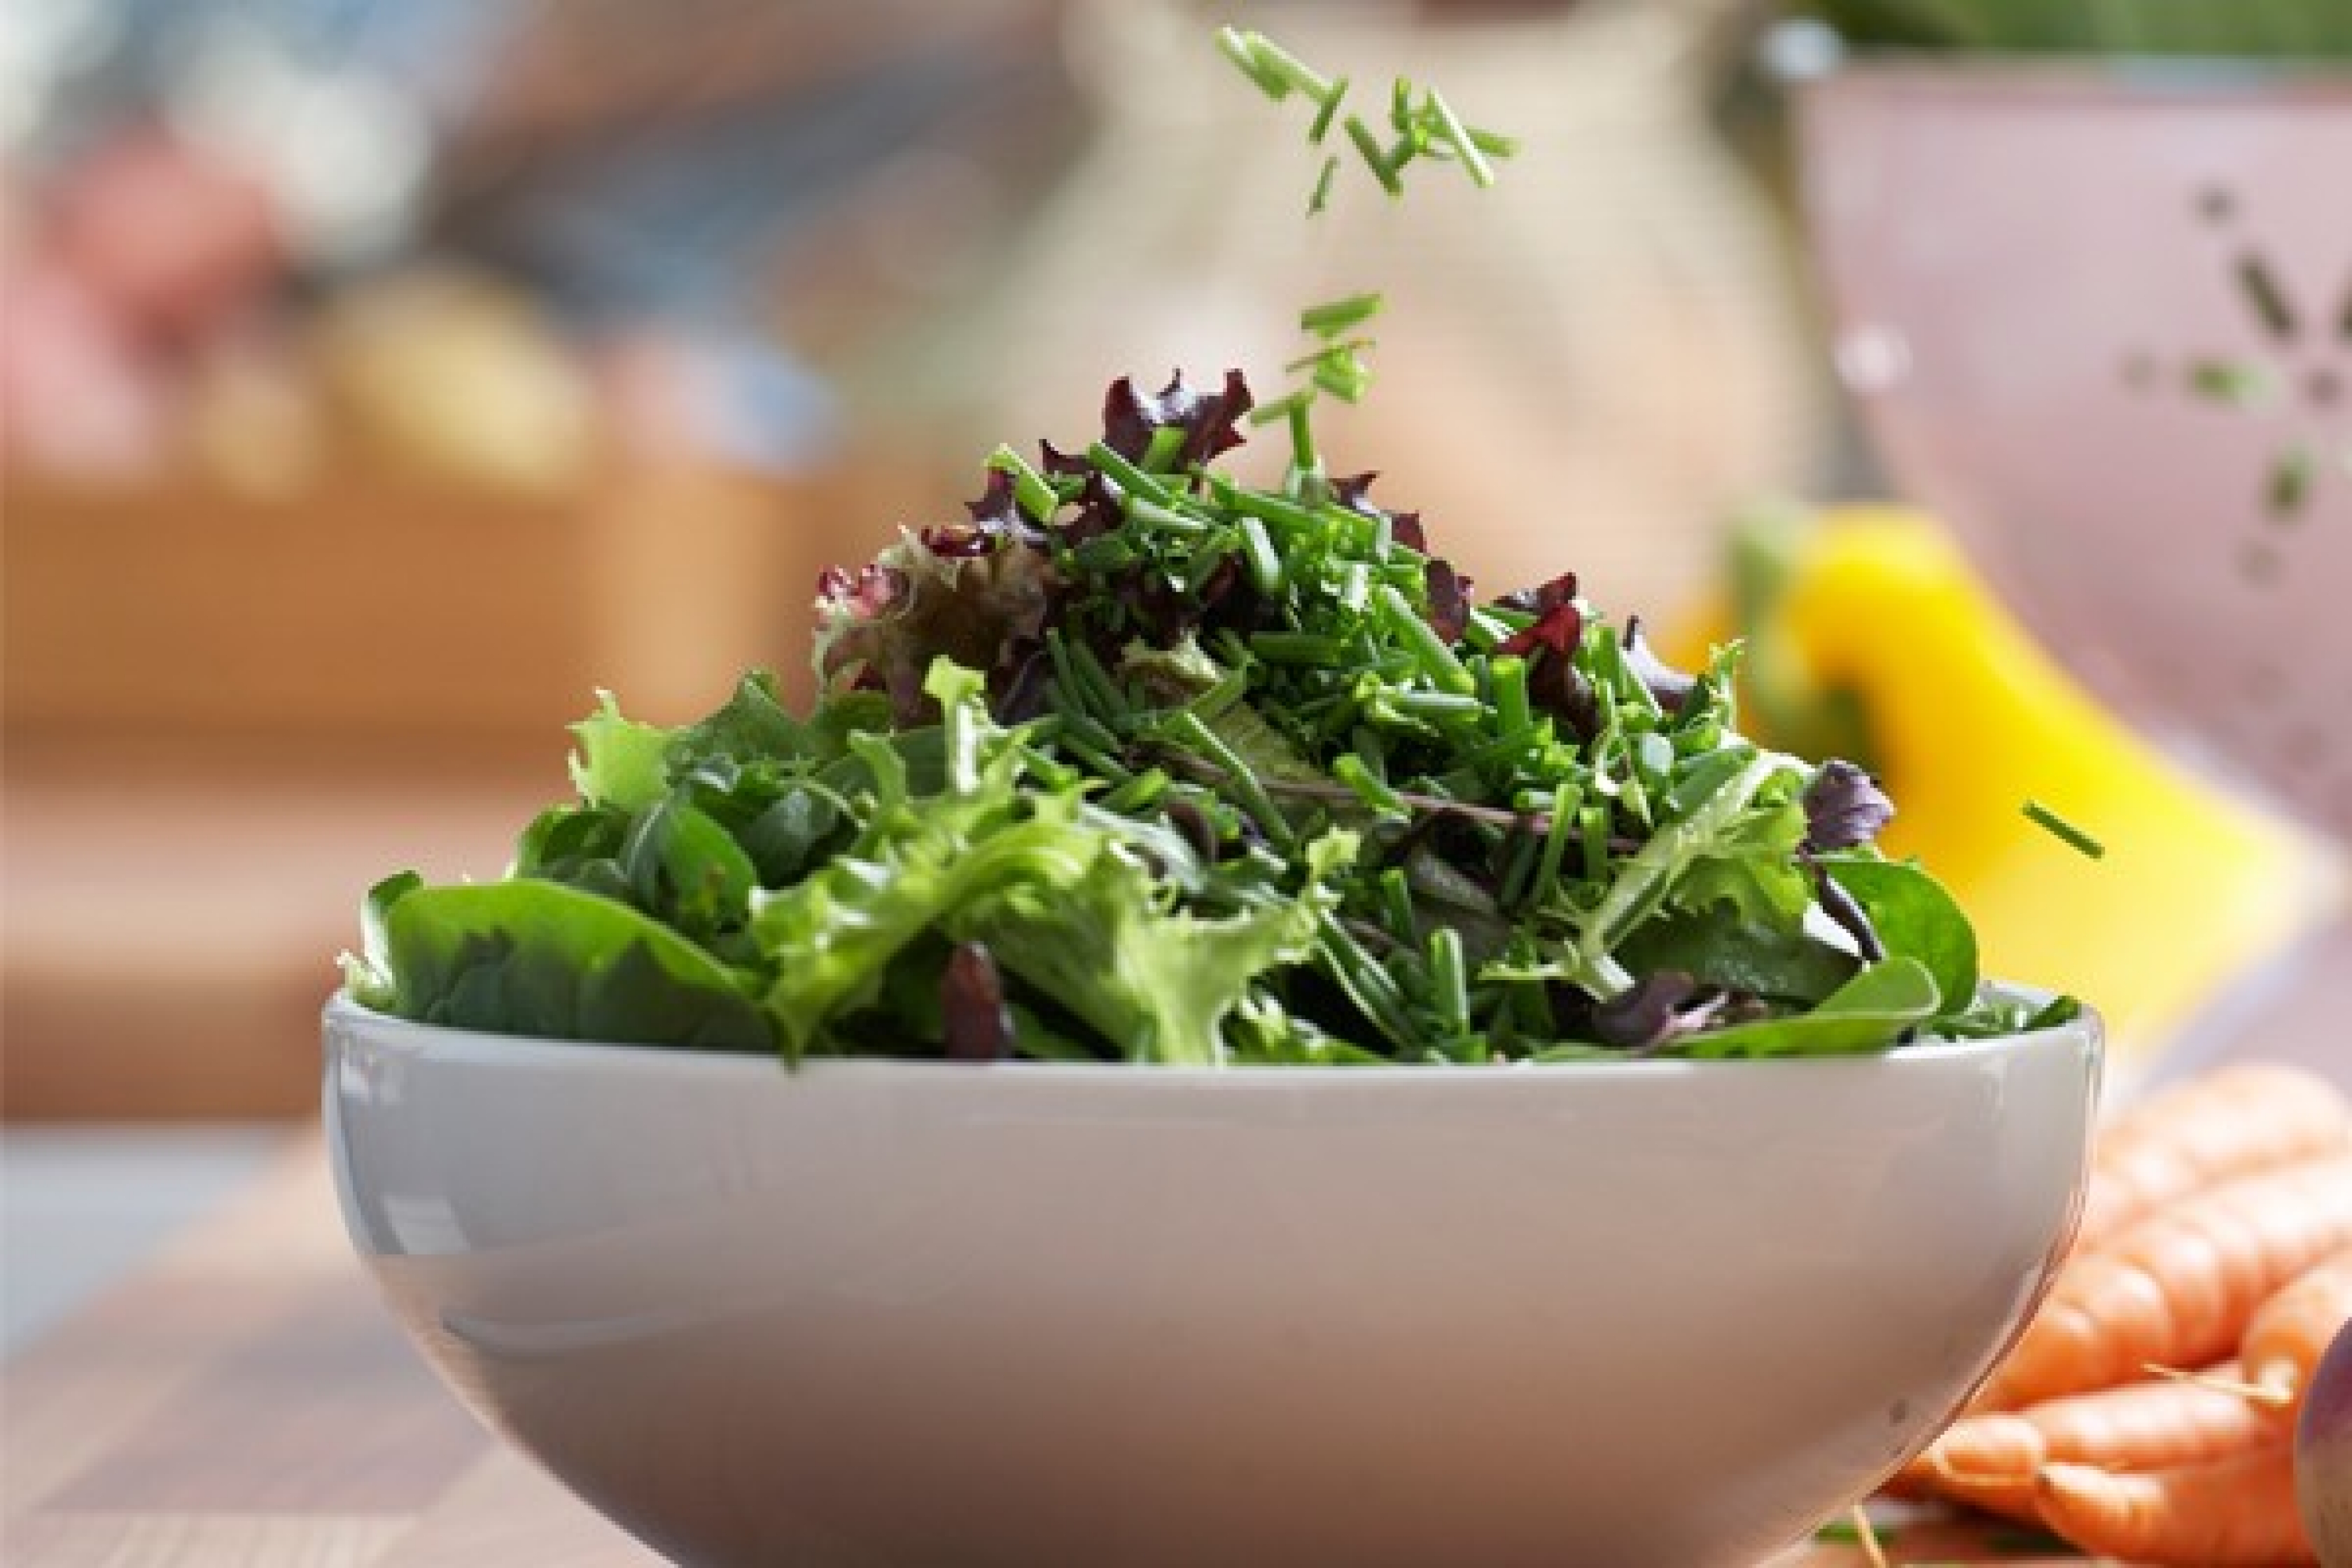 La pimpinella è indicata per insalate, come questa insalata mista.